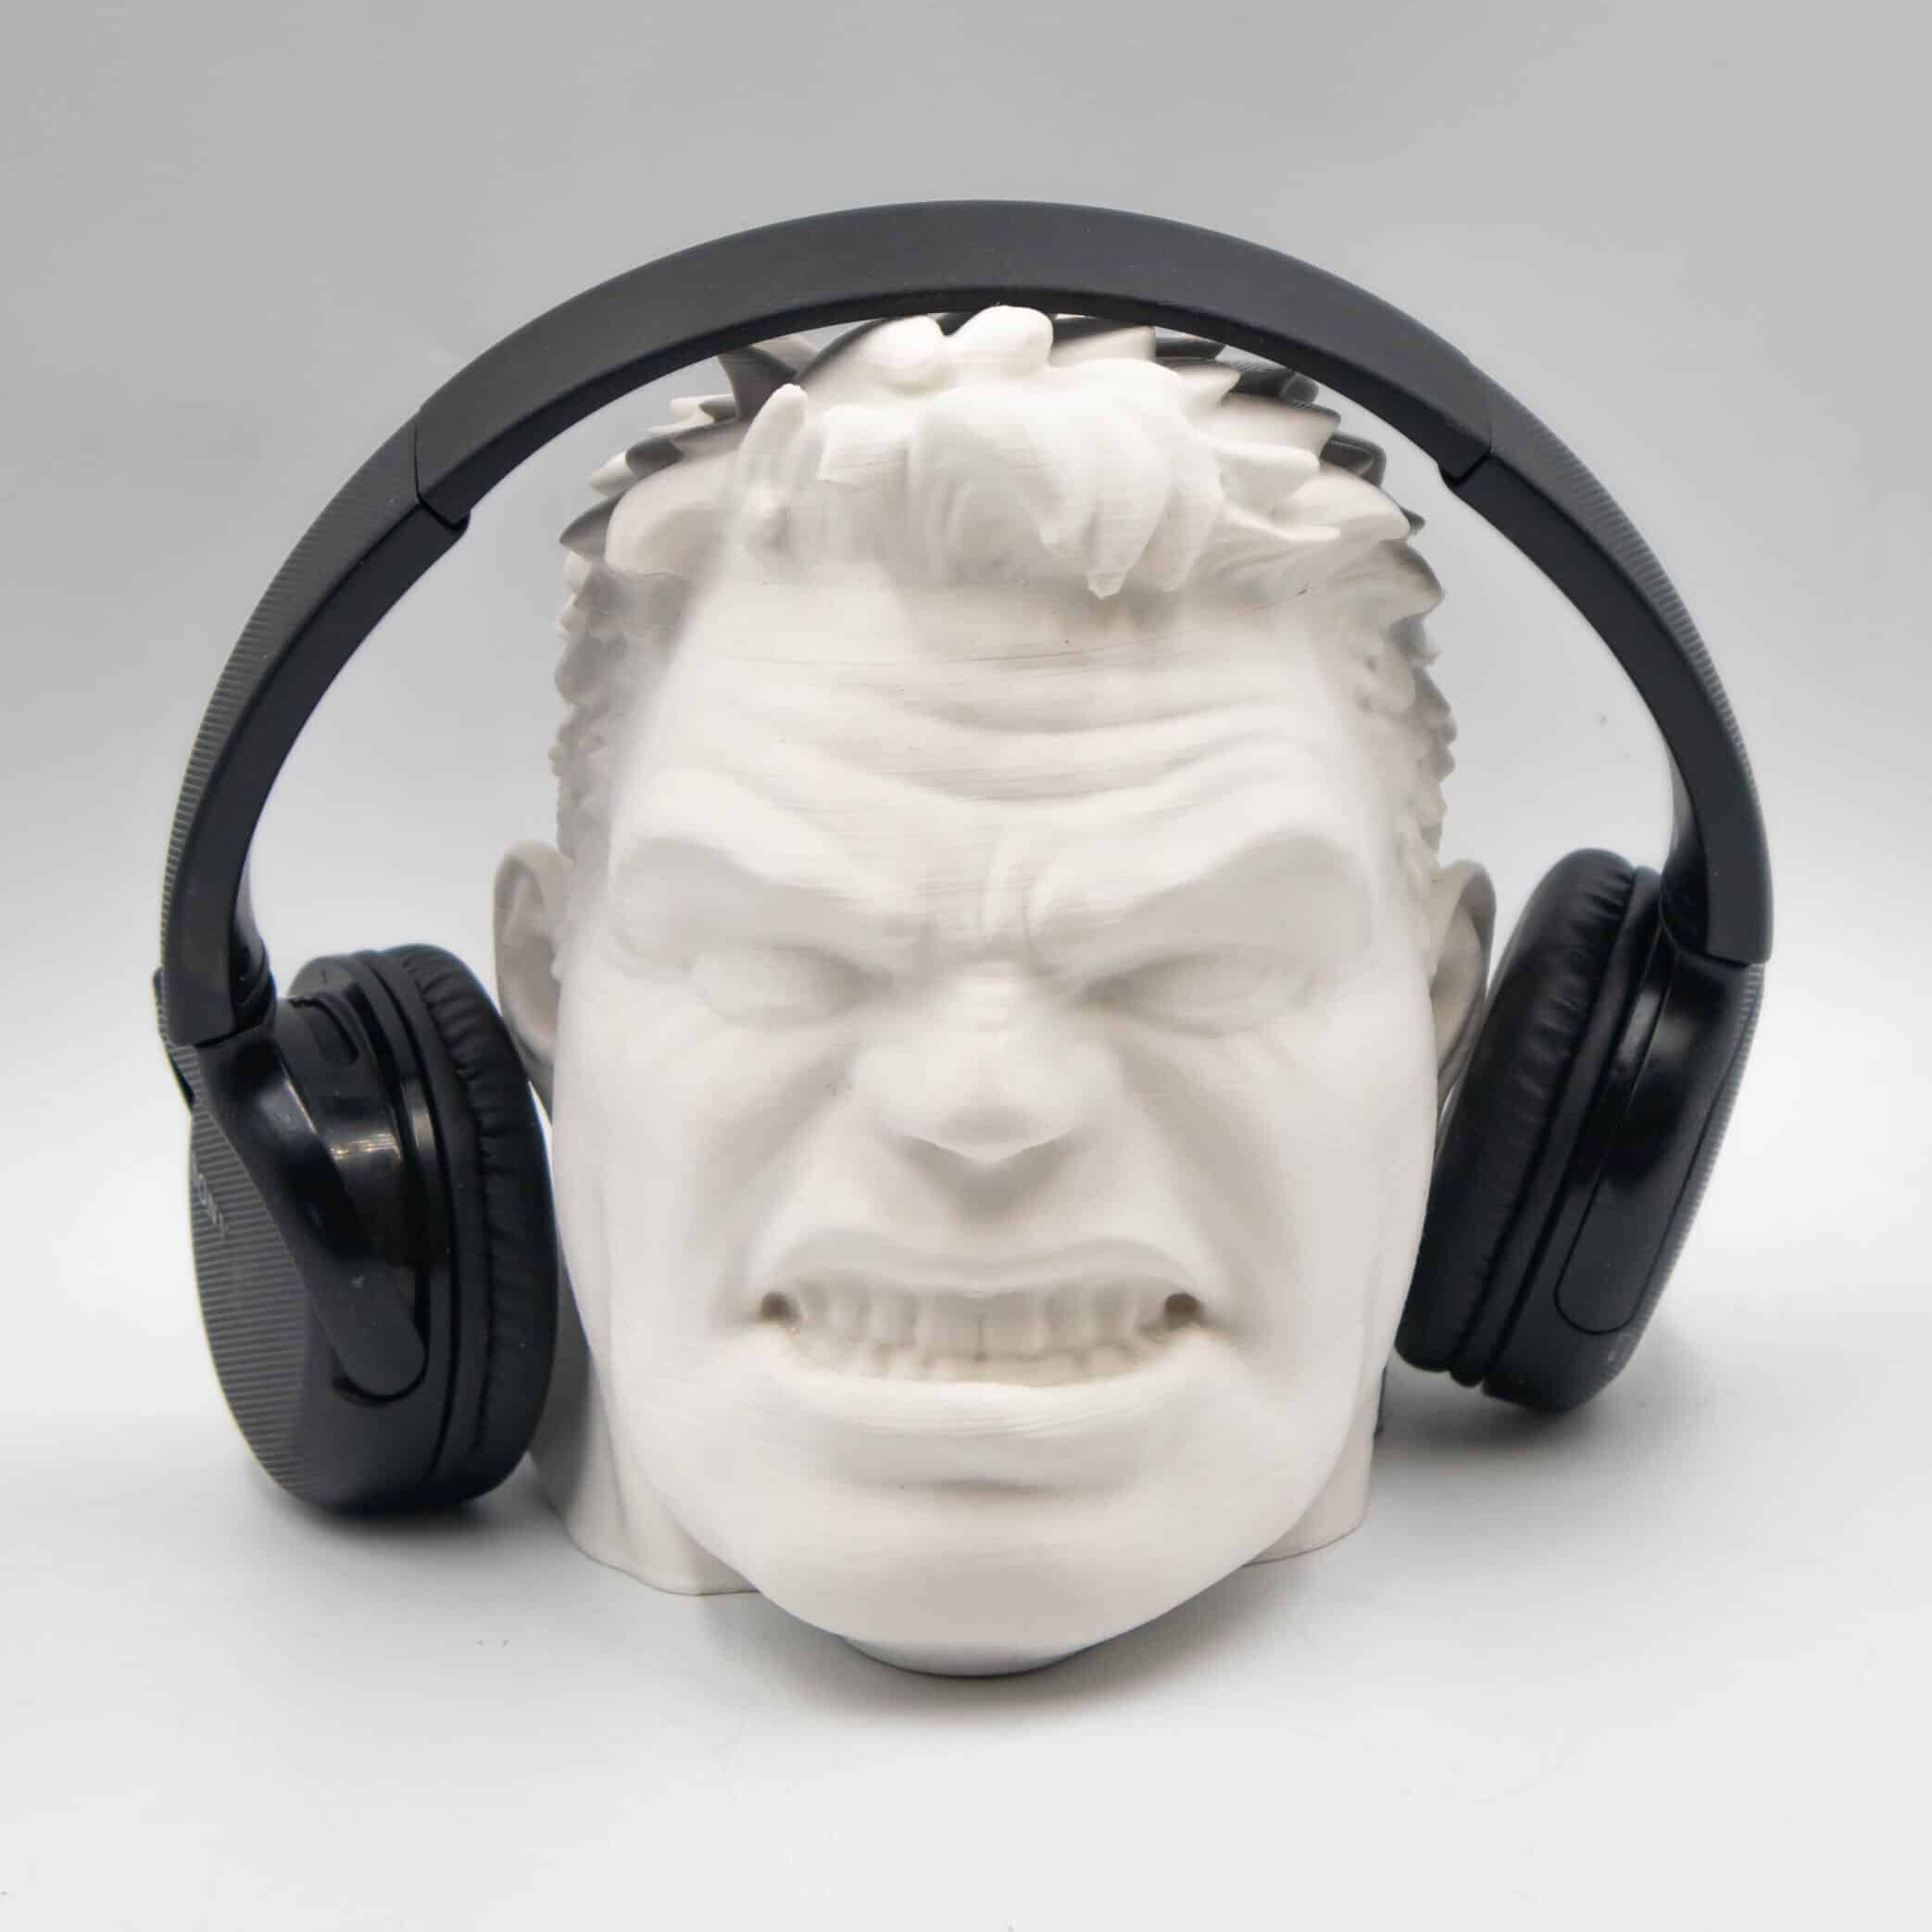 Hulk Head Headphone Stand - Marvel